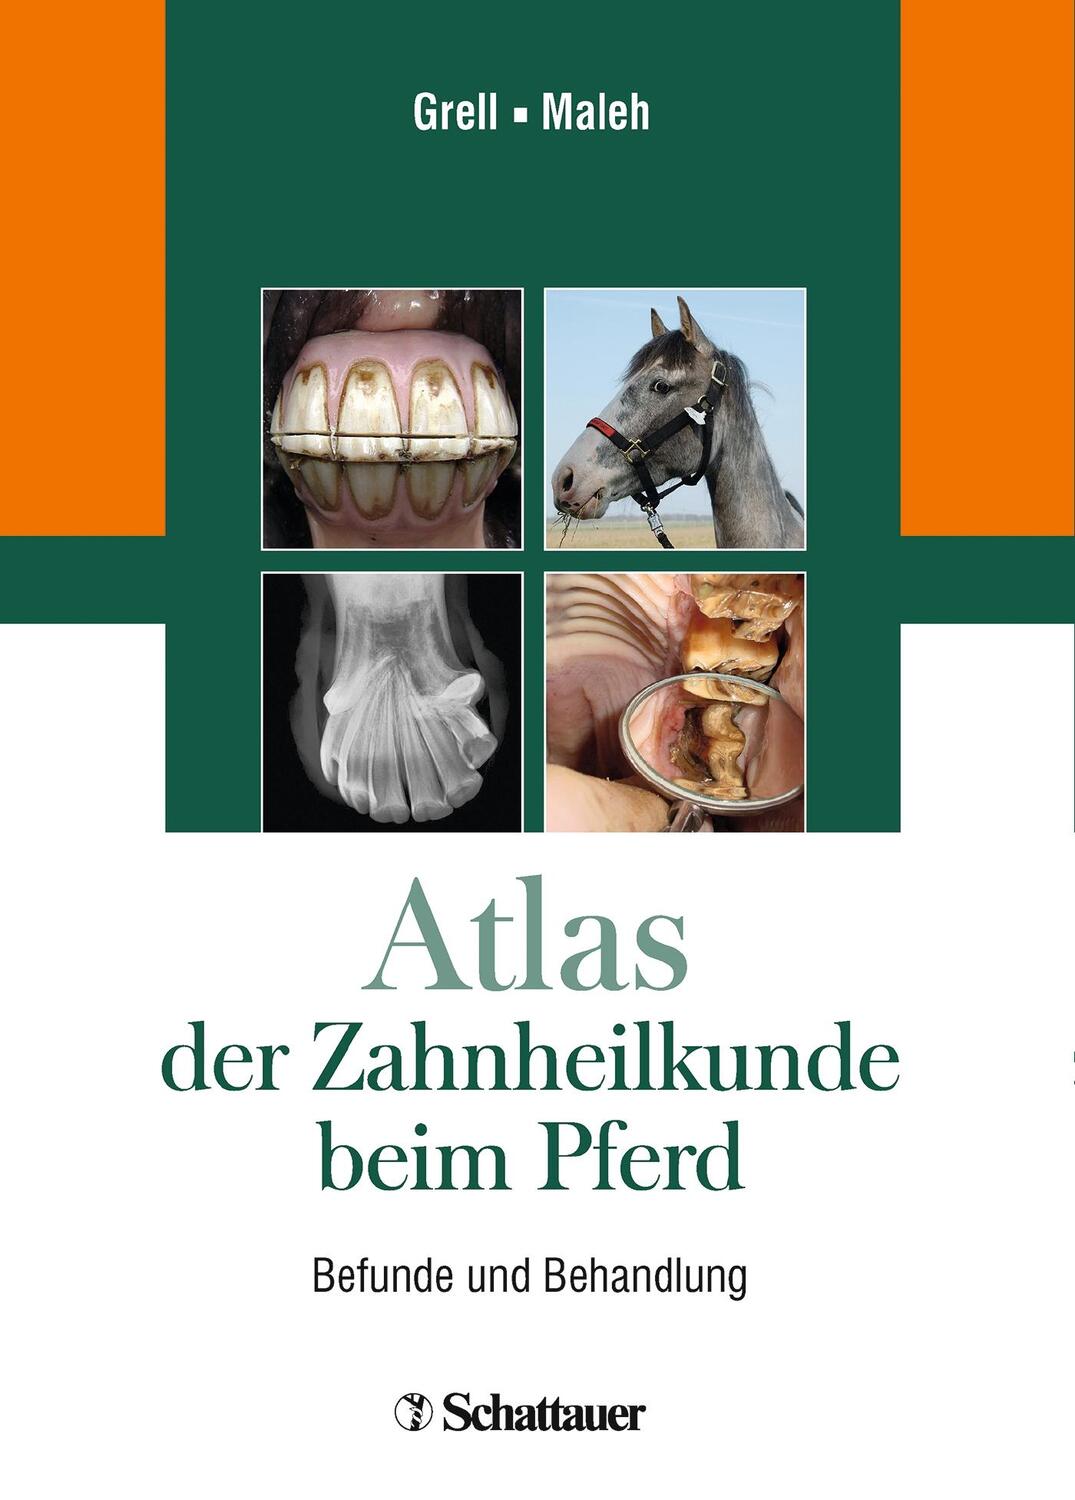 Atlas der Zahnheilkunde beim Pferd - Grell, Martin